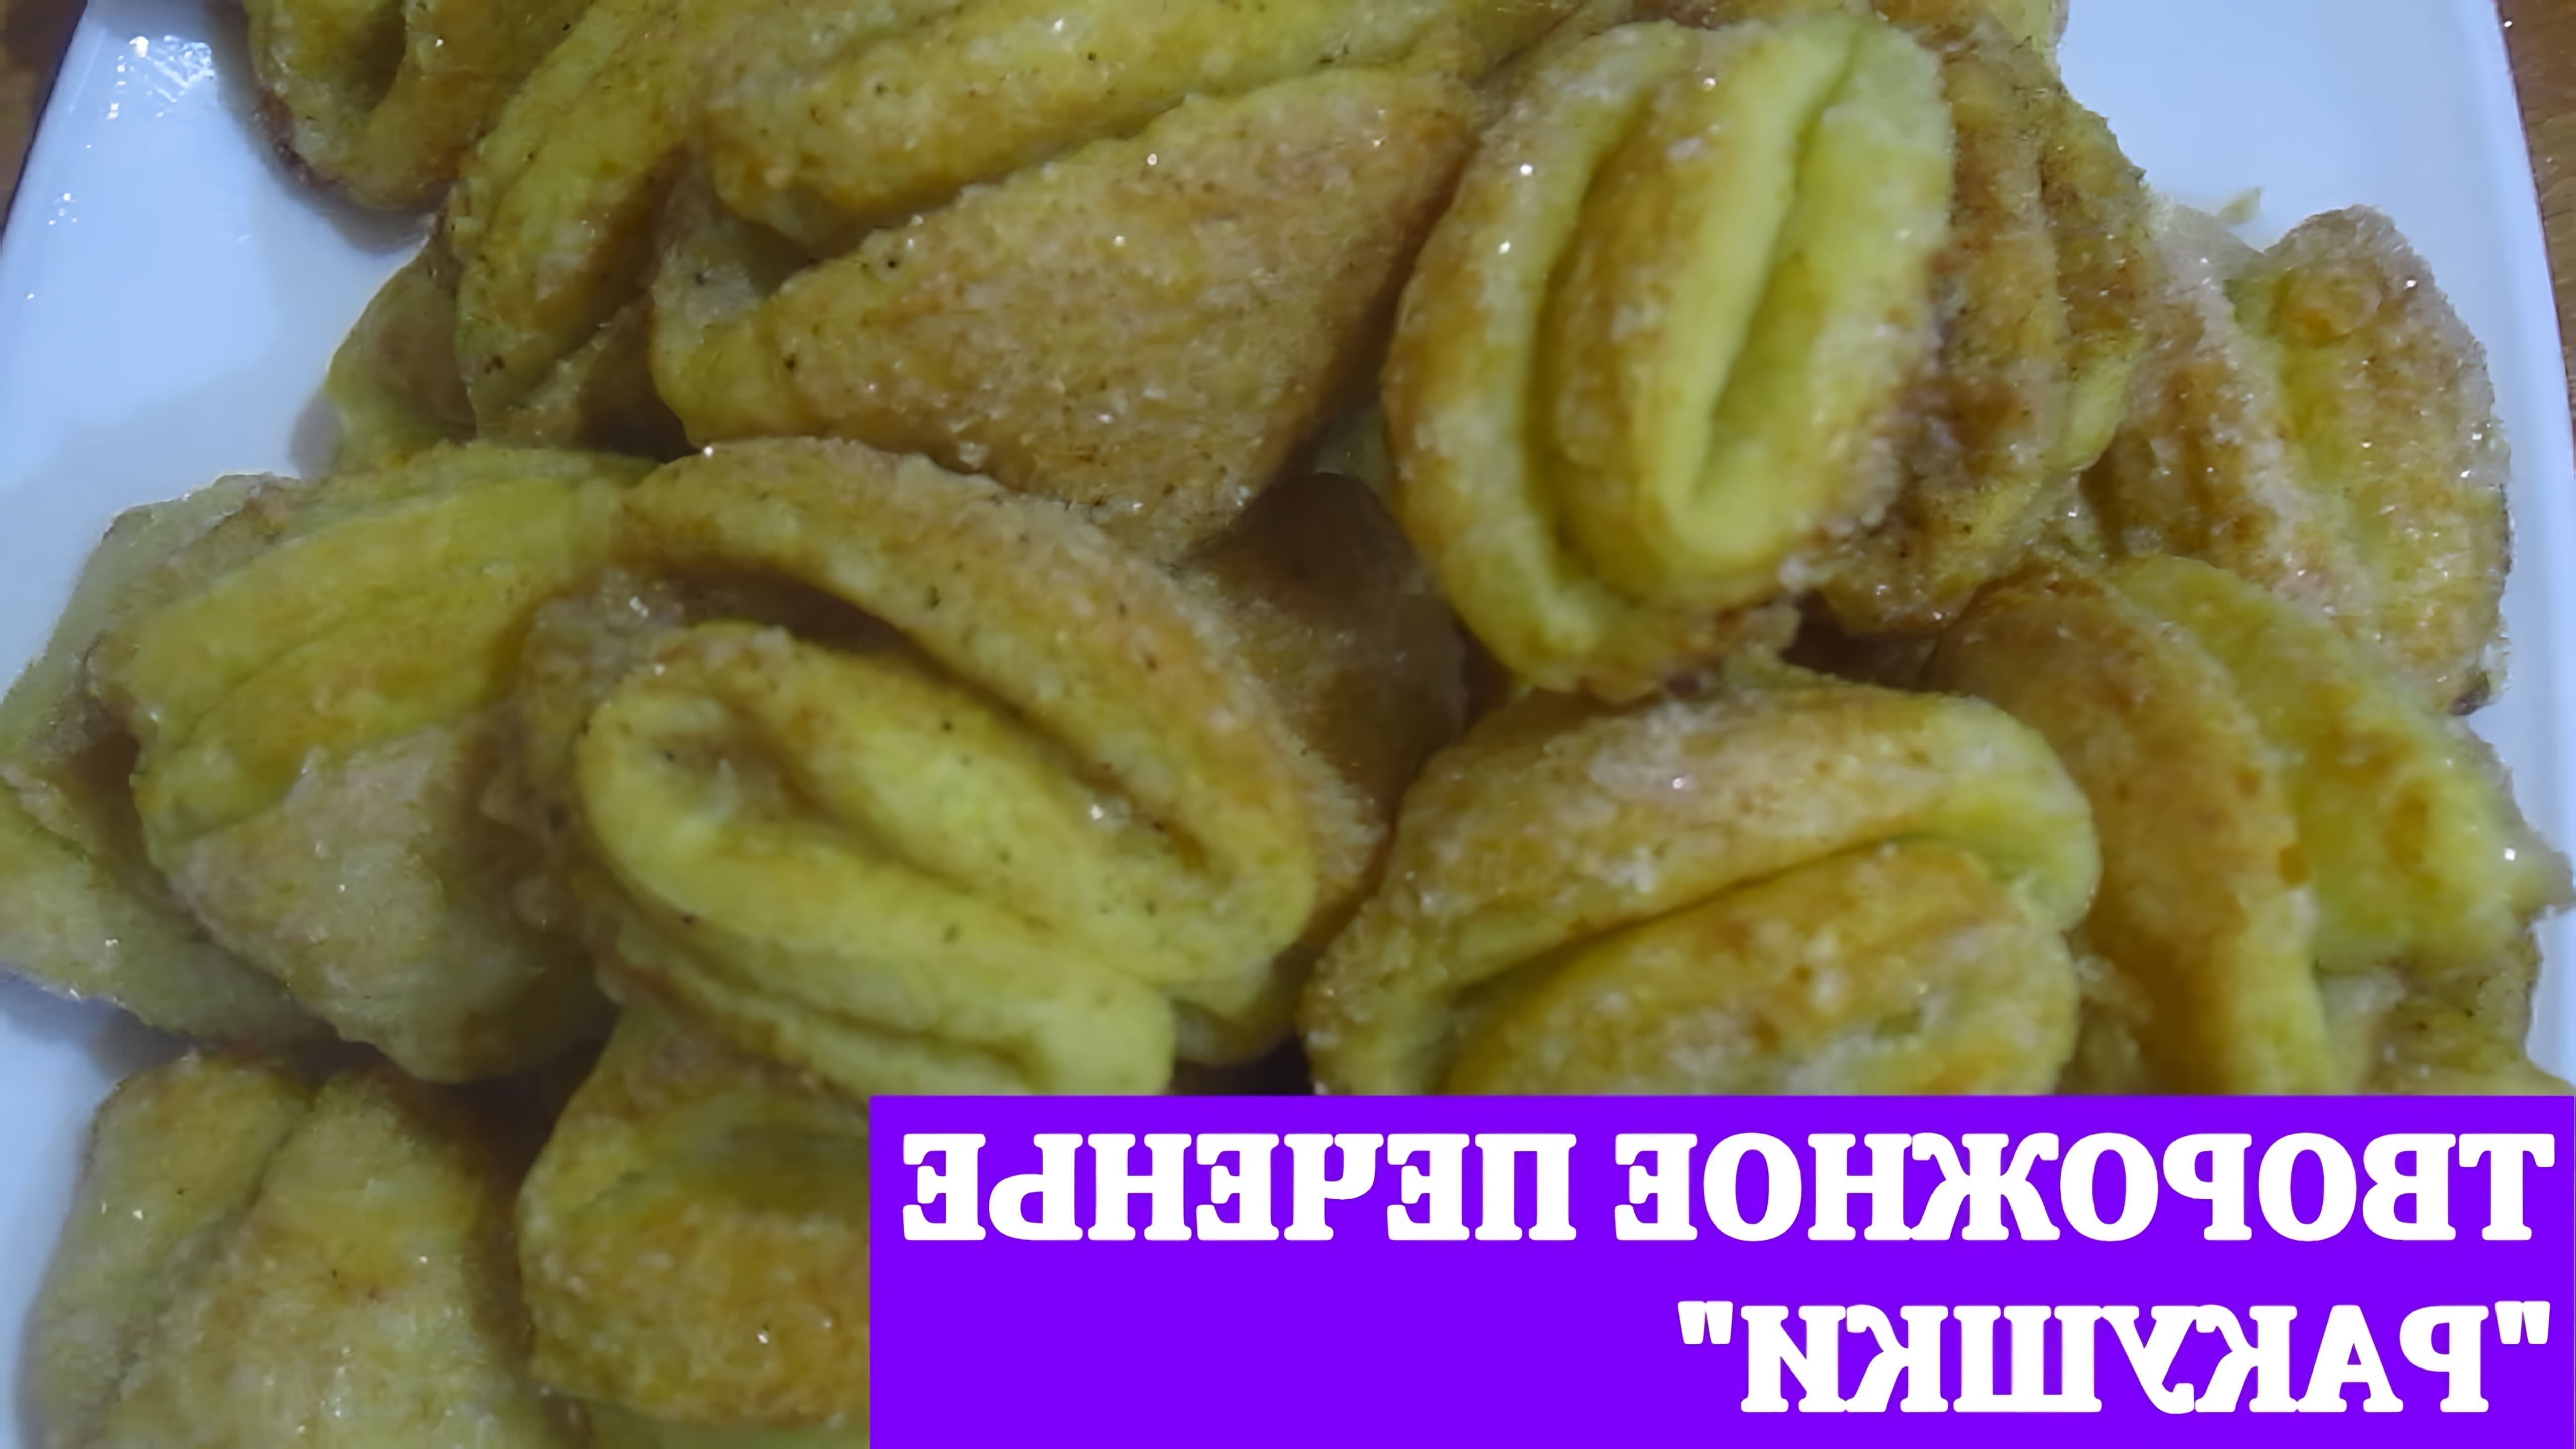 В этом видео демонстрируется процесс приготовления вкусного творожного печенья "ракушки"